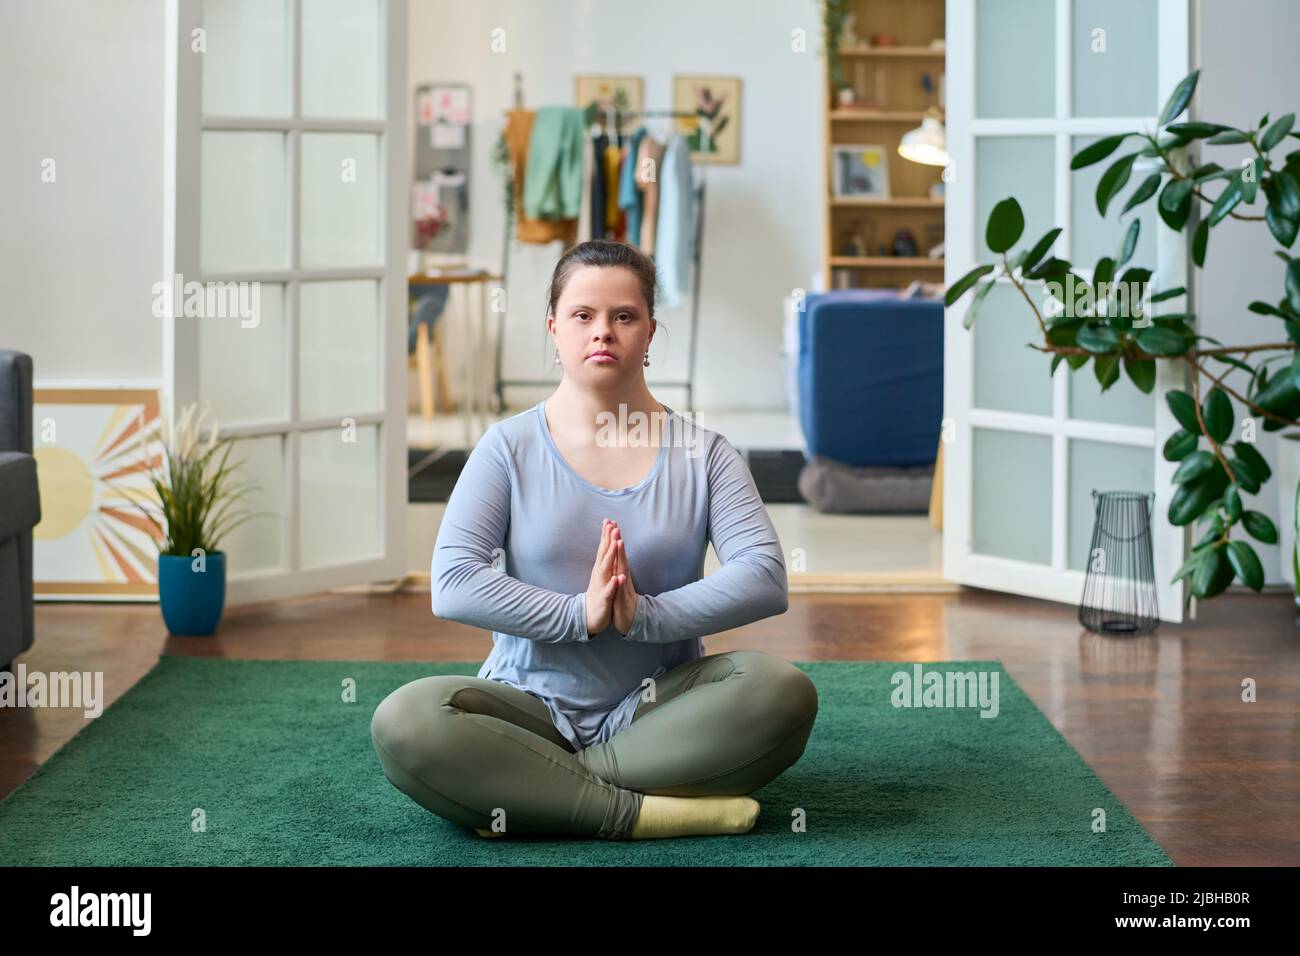 Junge Frau mit Behinderung sitzt in Lotuspose auf dem Boden des geräumigen Wohnzimmers und schaut während des Yoga auf die Kamera Stockfoto